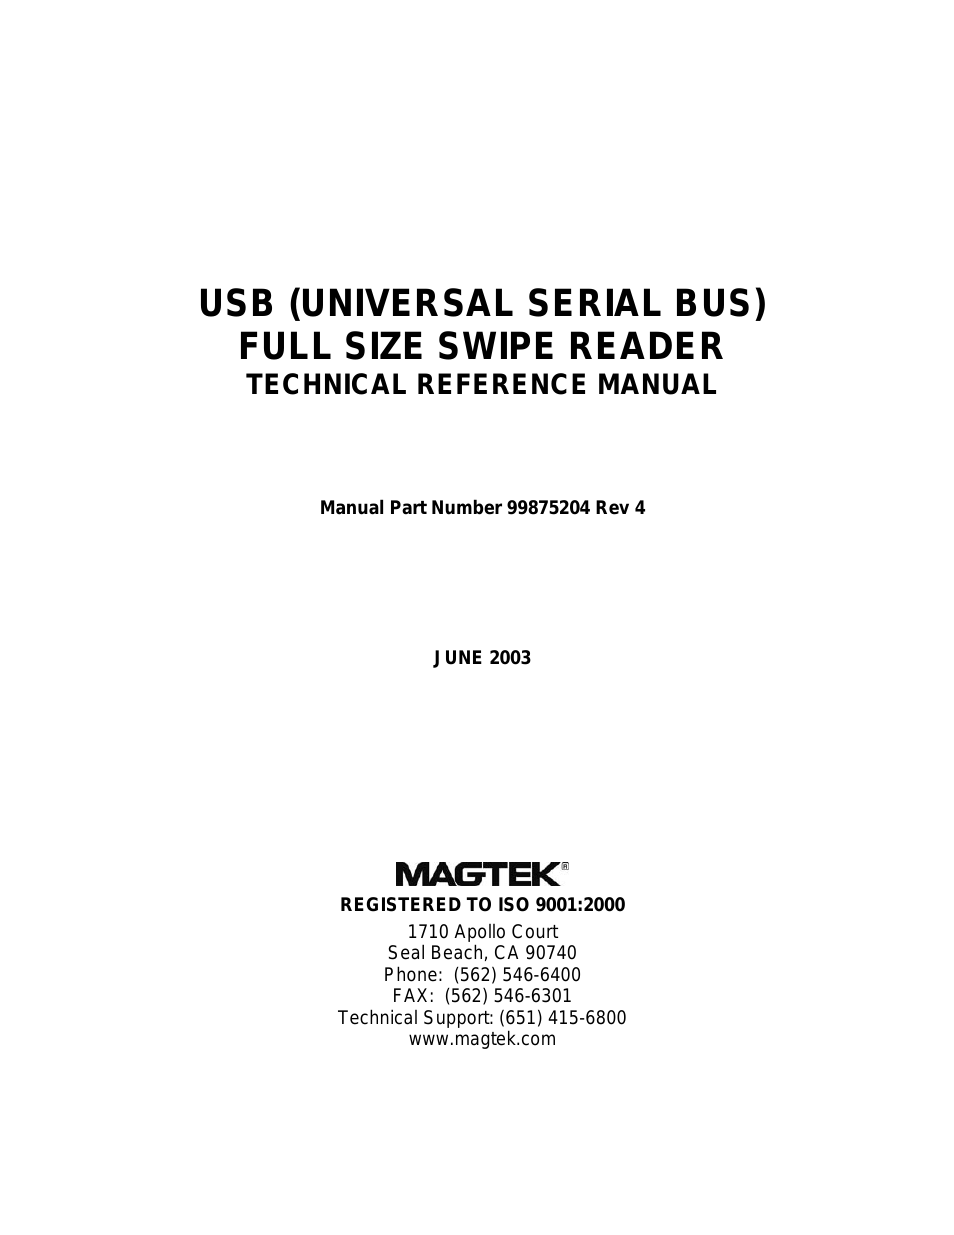 USB (UNIVERSAL SERIAL BUS) FULL SIZE SWIPE READER